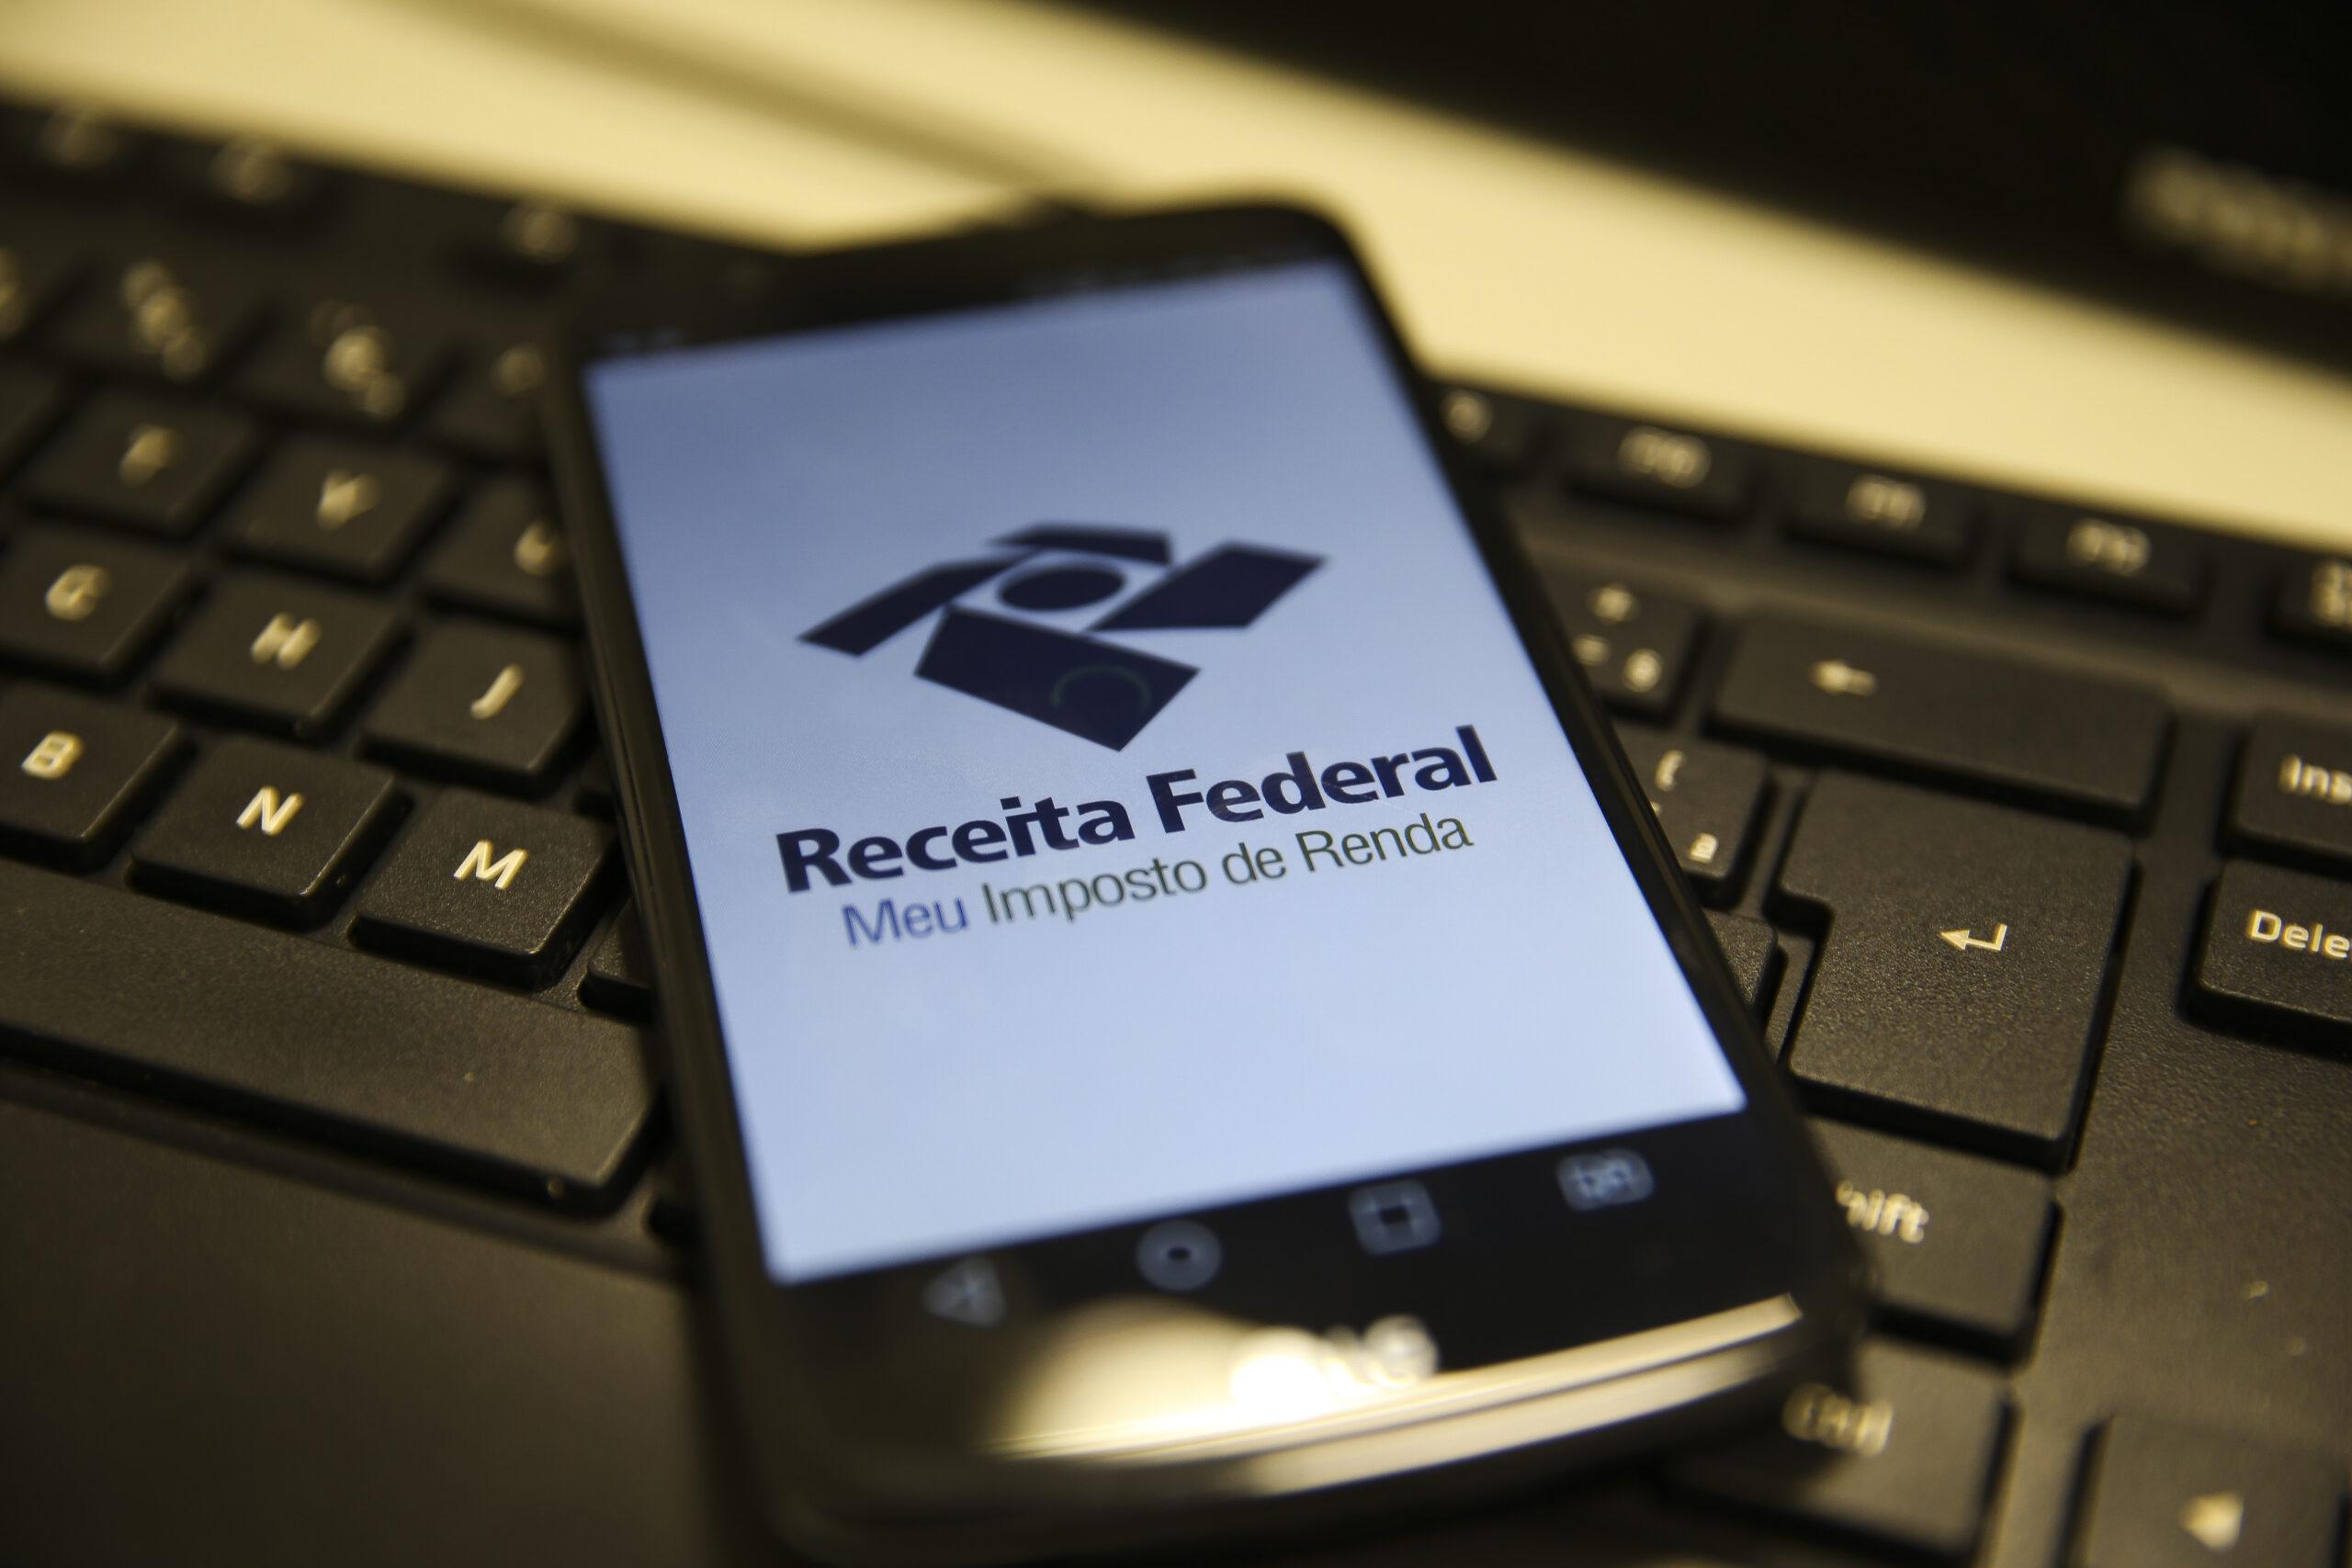 Imagem mostra celular com tela do aplicatvo da receita federal para declarar imposto de renda